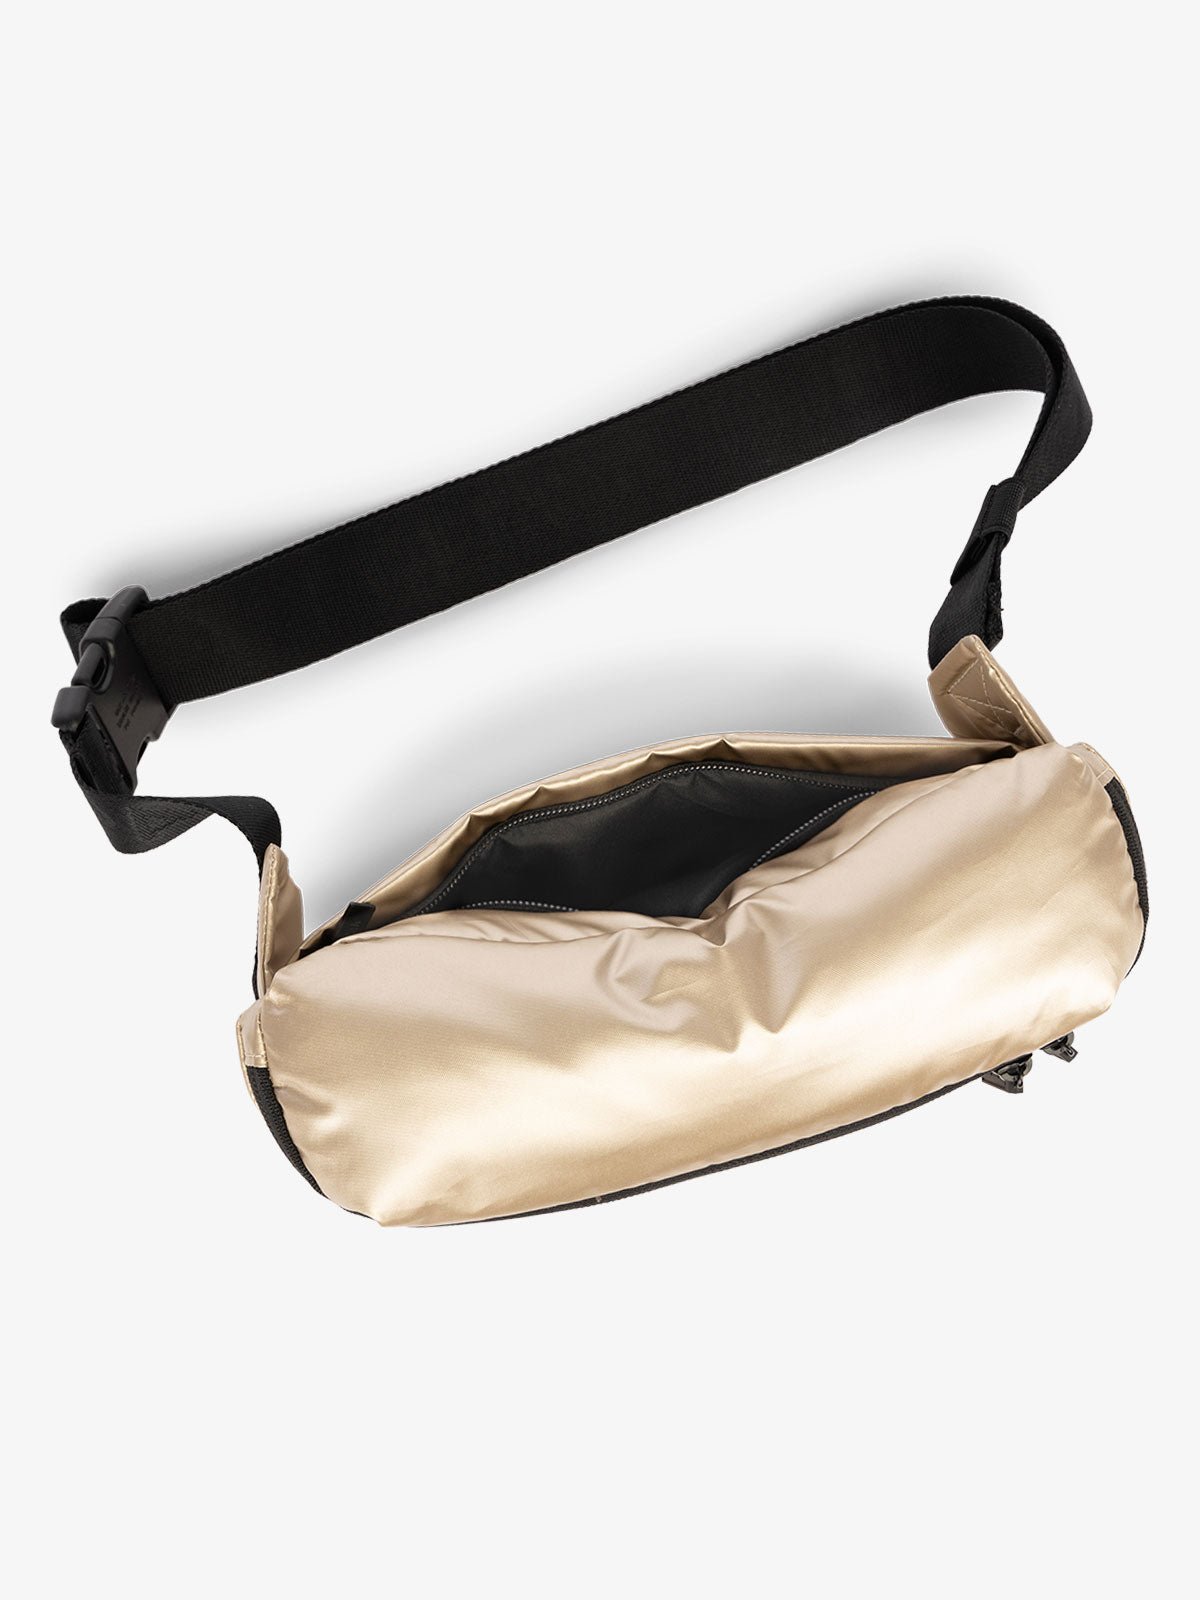 CALPAK Luka Belt Bag with adjustable strap and hidden back pocket in gold